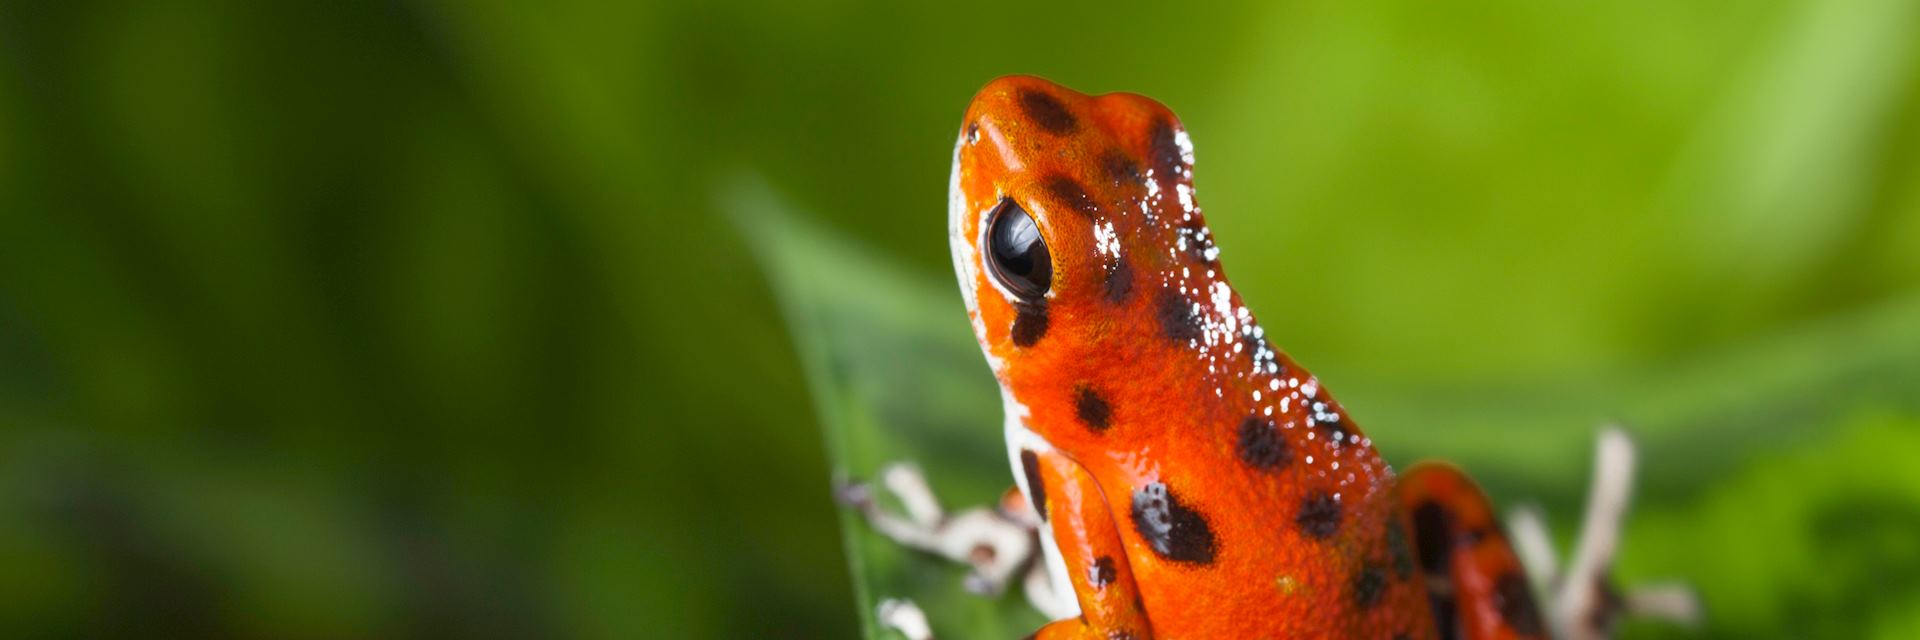 Poison dart frog, Bocas del Toro